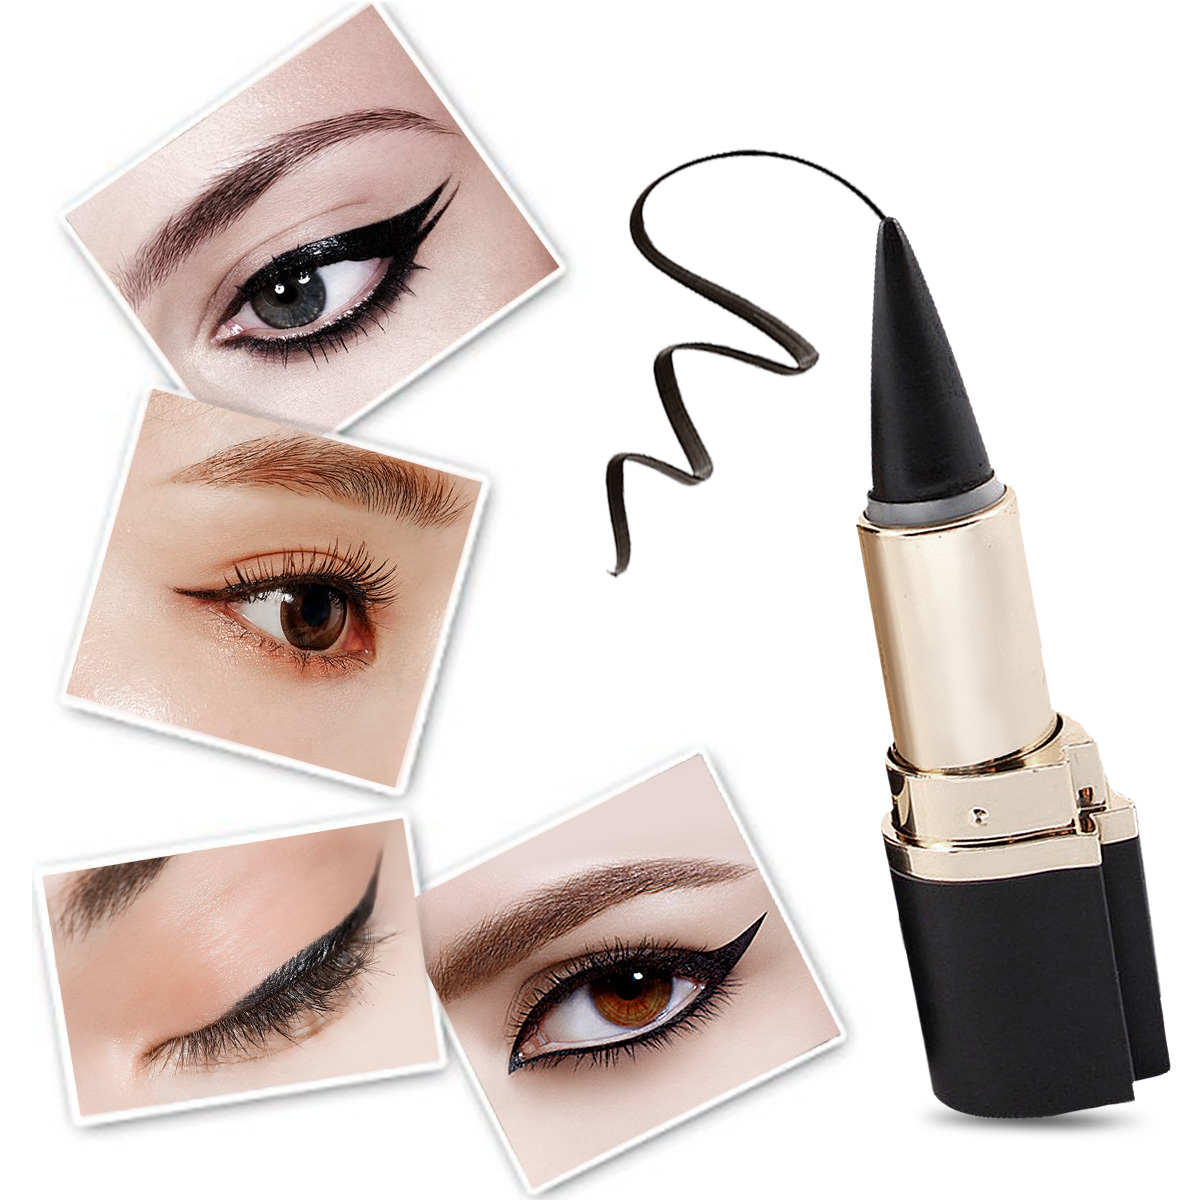 MISS ROSE 1pc Eye liner Noir Impermeable Crayon Contour Maquillage De Gel Pour Beaute Yeux